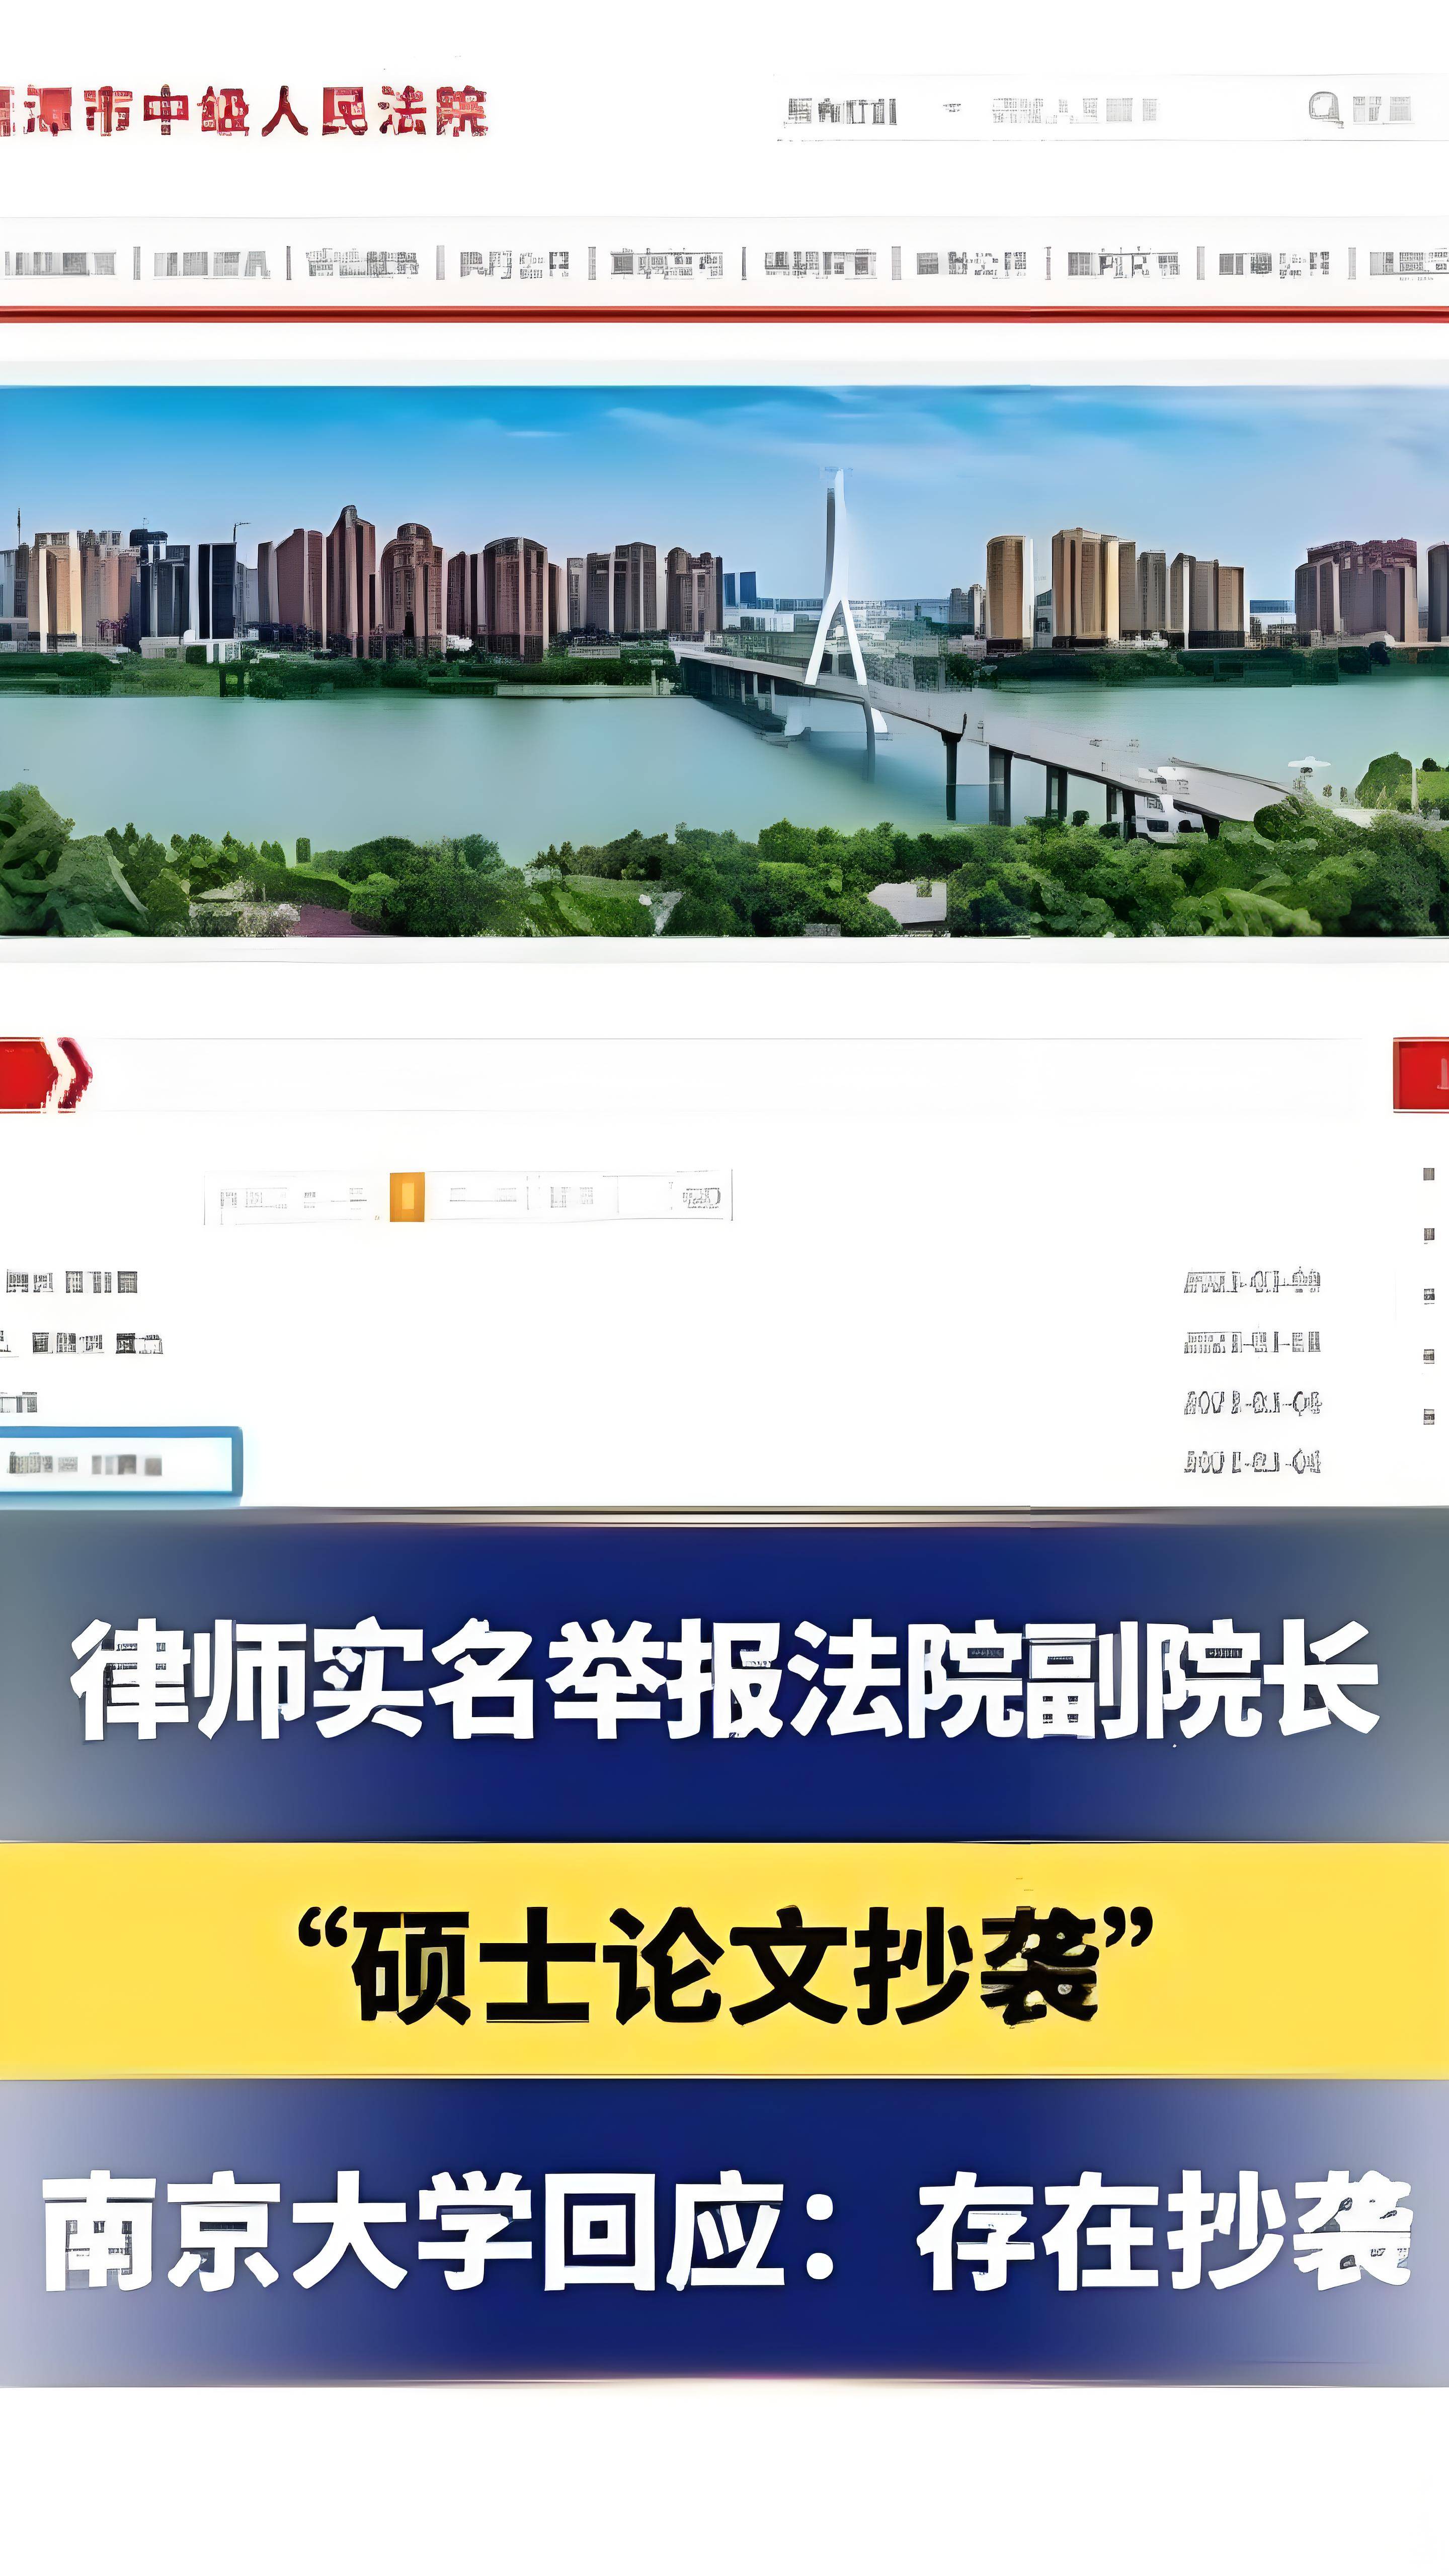 南京大学确认:鹰潭中院副院长刘赛连论文抄袭